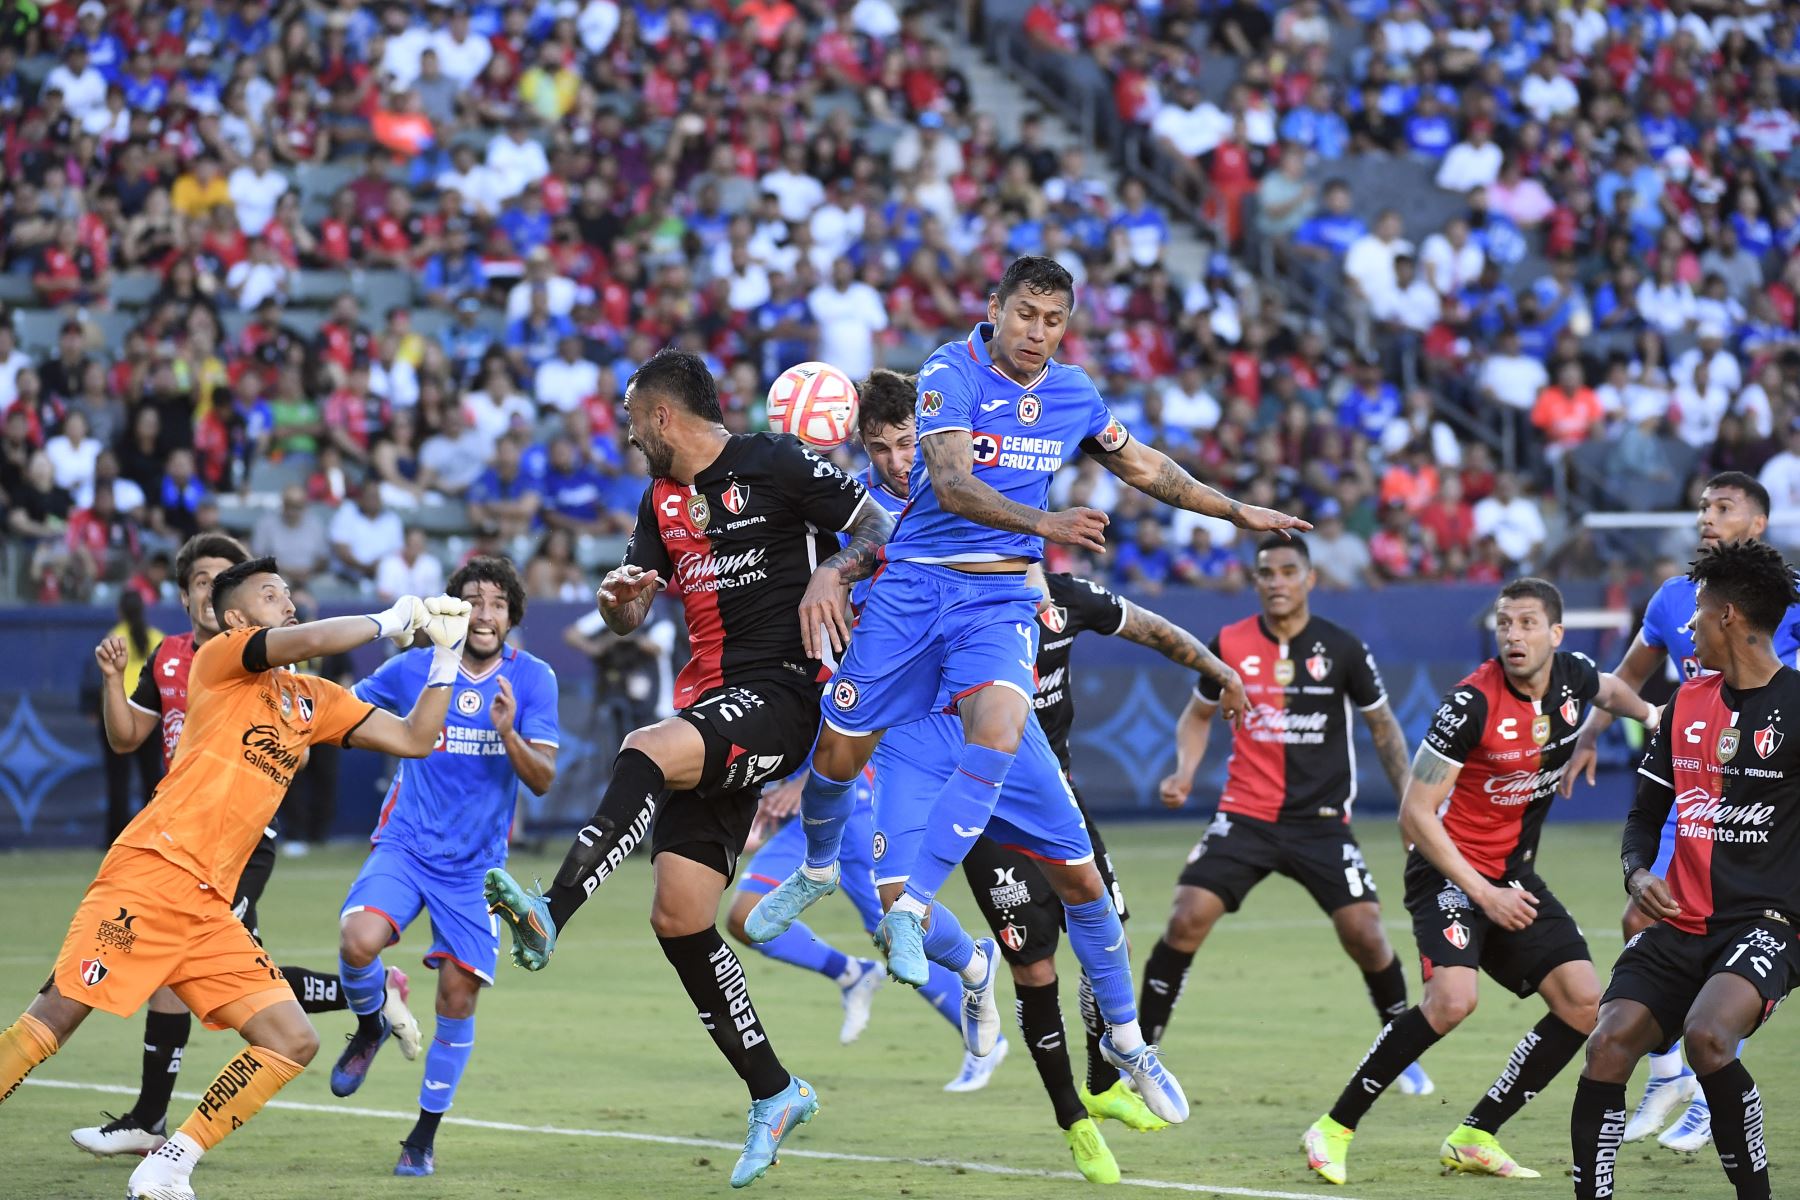 Santiago Giménez del Cruz Azul anota un gol de cabeza contra el portero Camilo Vargas del Atlas durante el partido por la Supercopa de Liga MX 2022. Foto: AFP